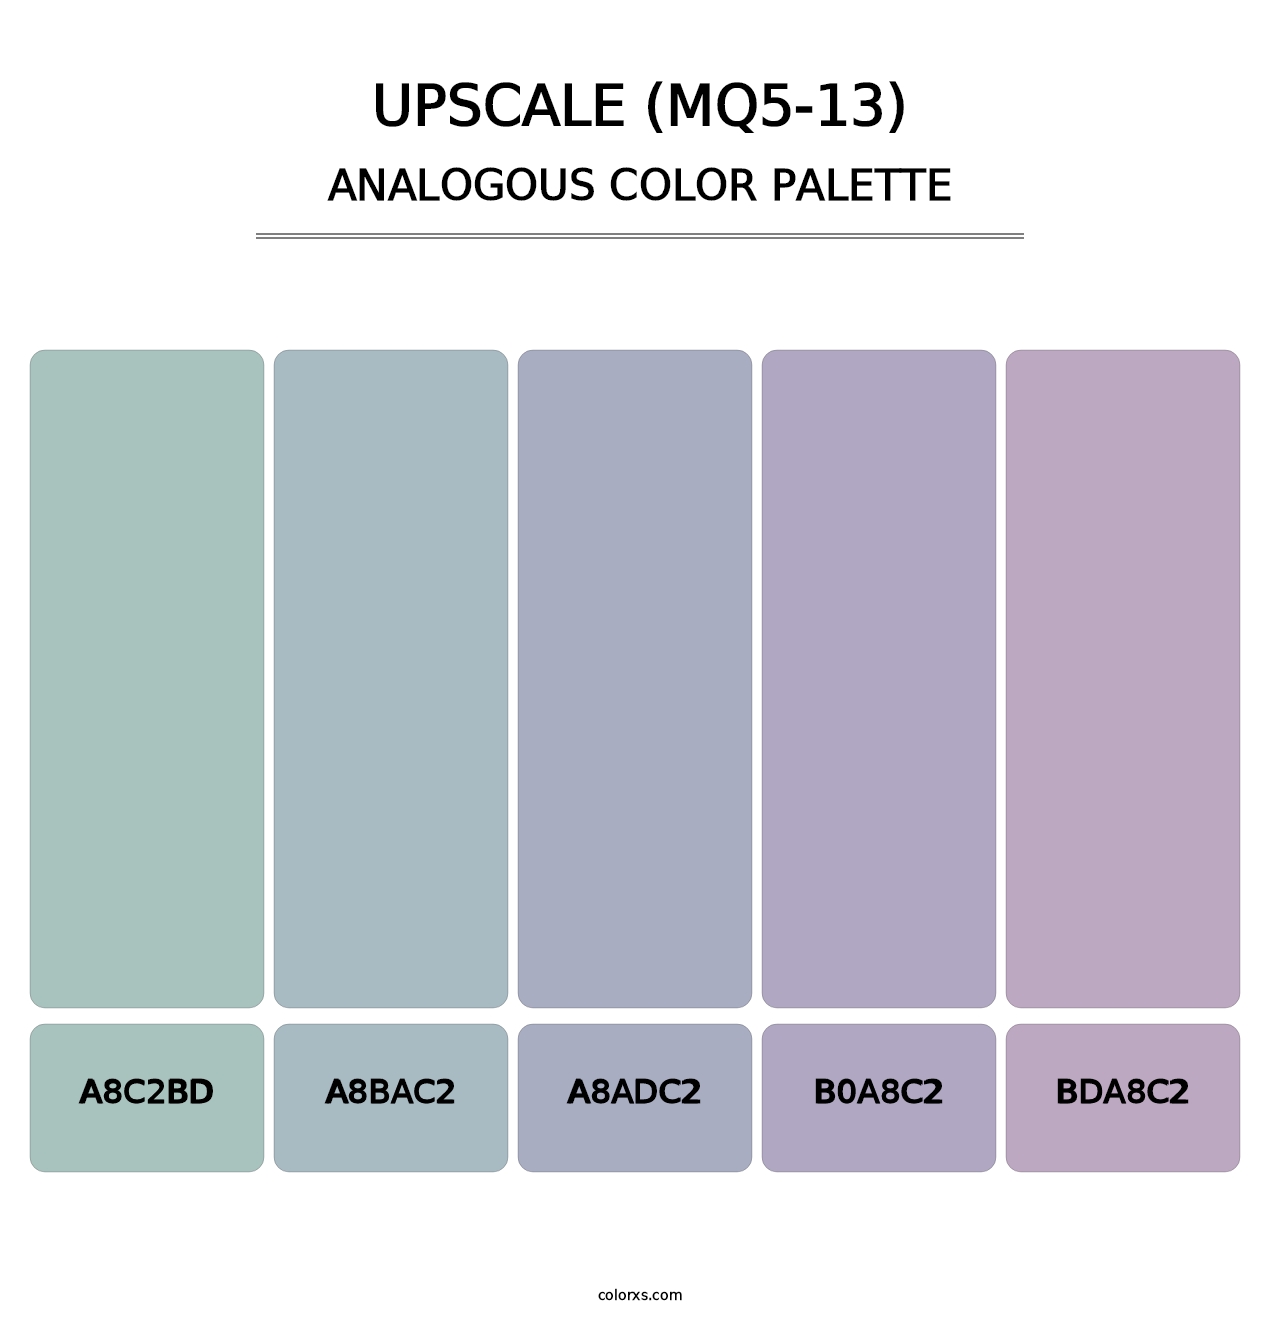 Upscale (MQ5-13) - Analogous Color Palette